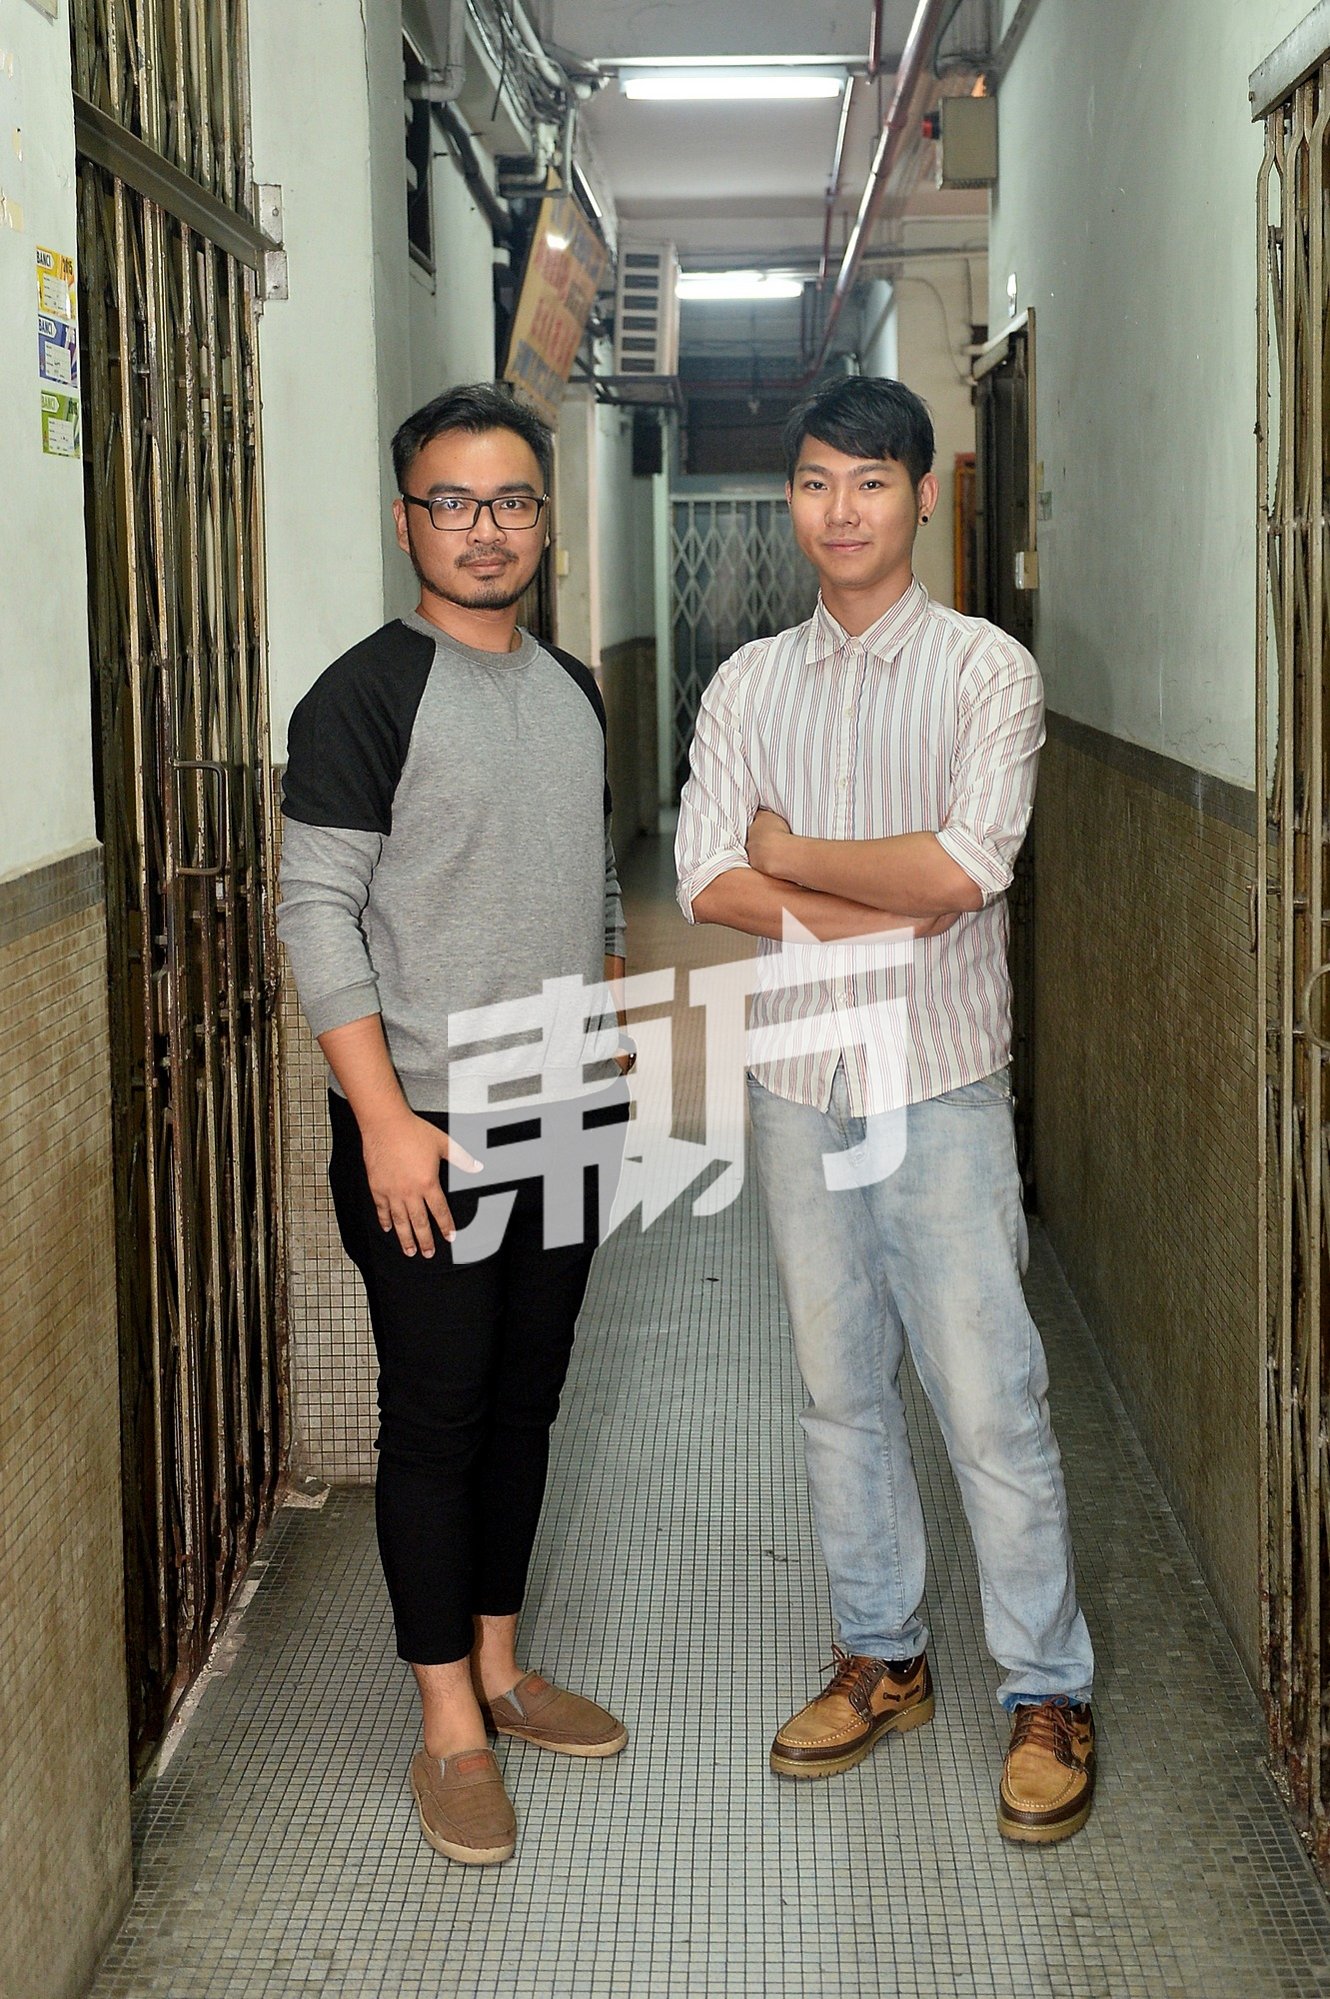 实验剧场对于梁家恩 （左）与陈俊霖来说是新的尝试，他们期待观 众的反应，促请大家抛开对戏剧演出的既定印象观赏这部作品。